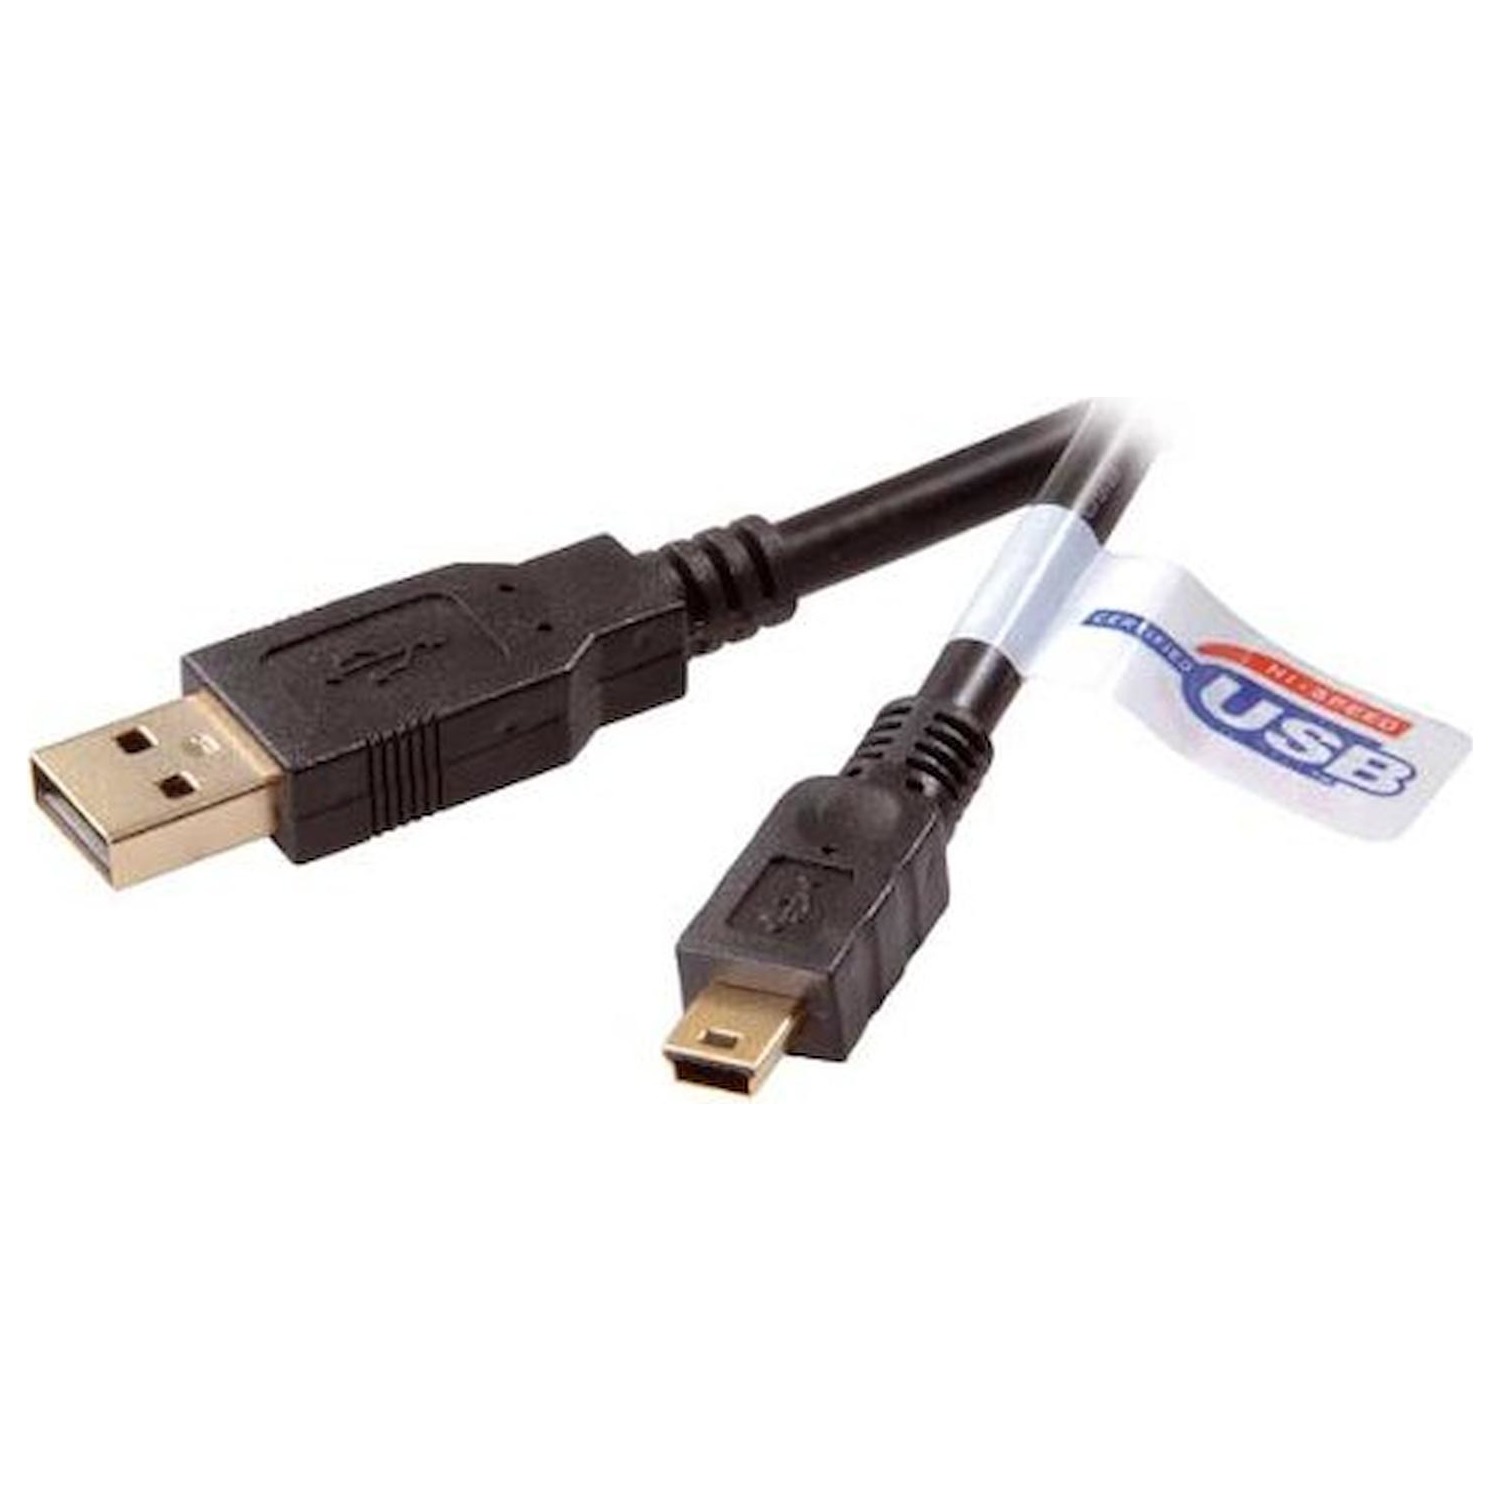 Immagine per Vivanco cavo USB 2.0 A/mini 45213 da DIMOStore